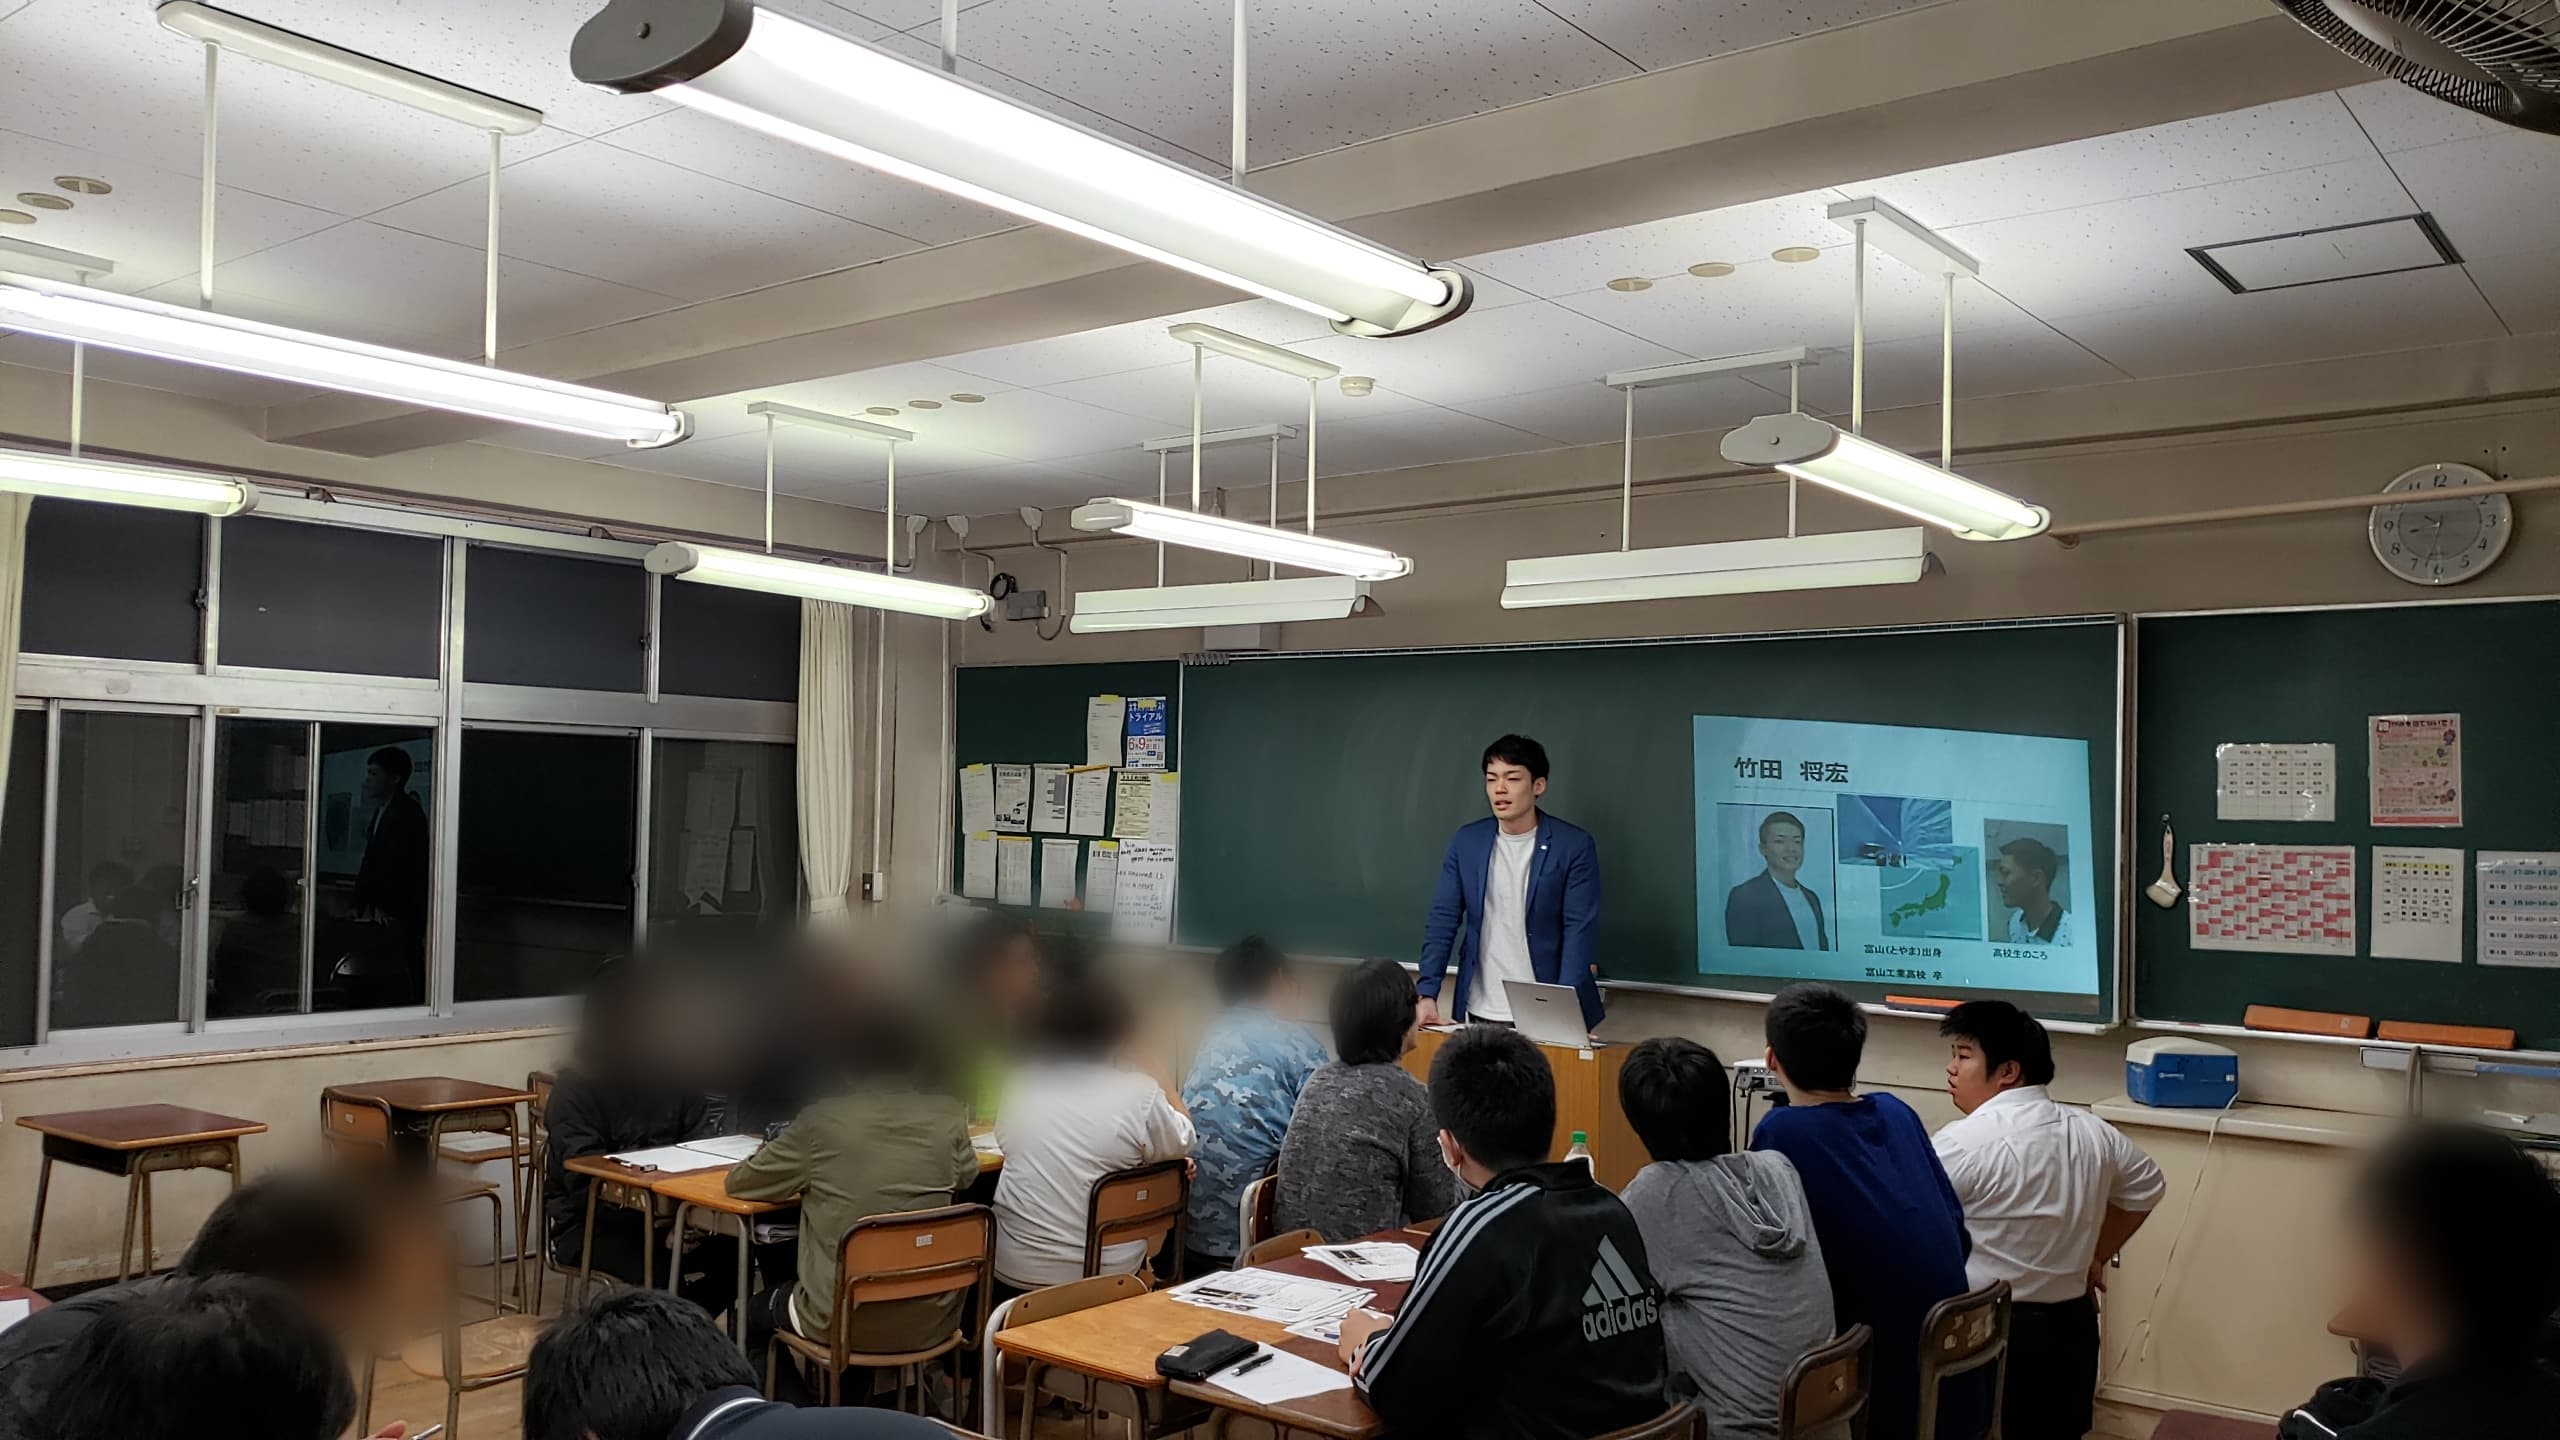 埼玉県立上尾高等学校 学年制による定時制 で授業を開催いたしました 一般社団法人スクール トゥ ワーク